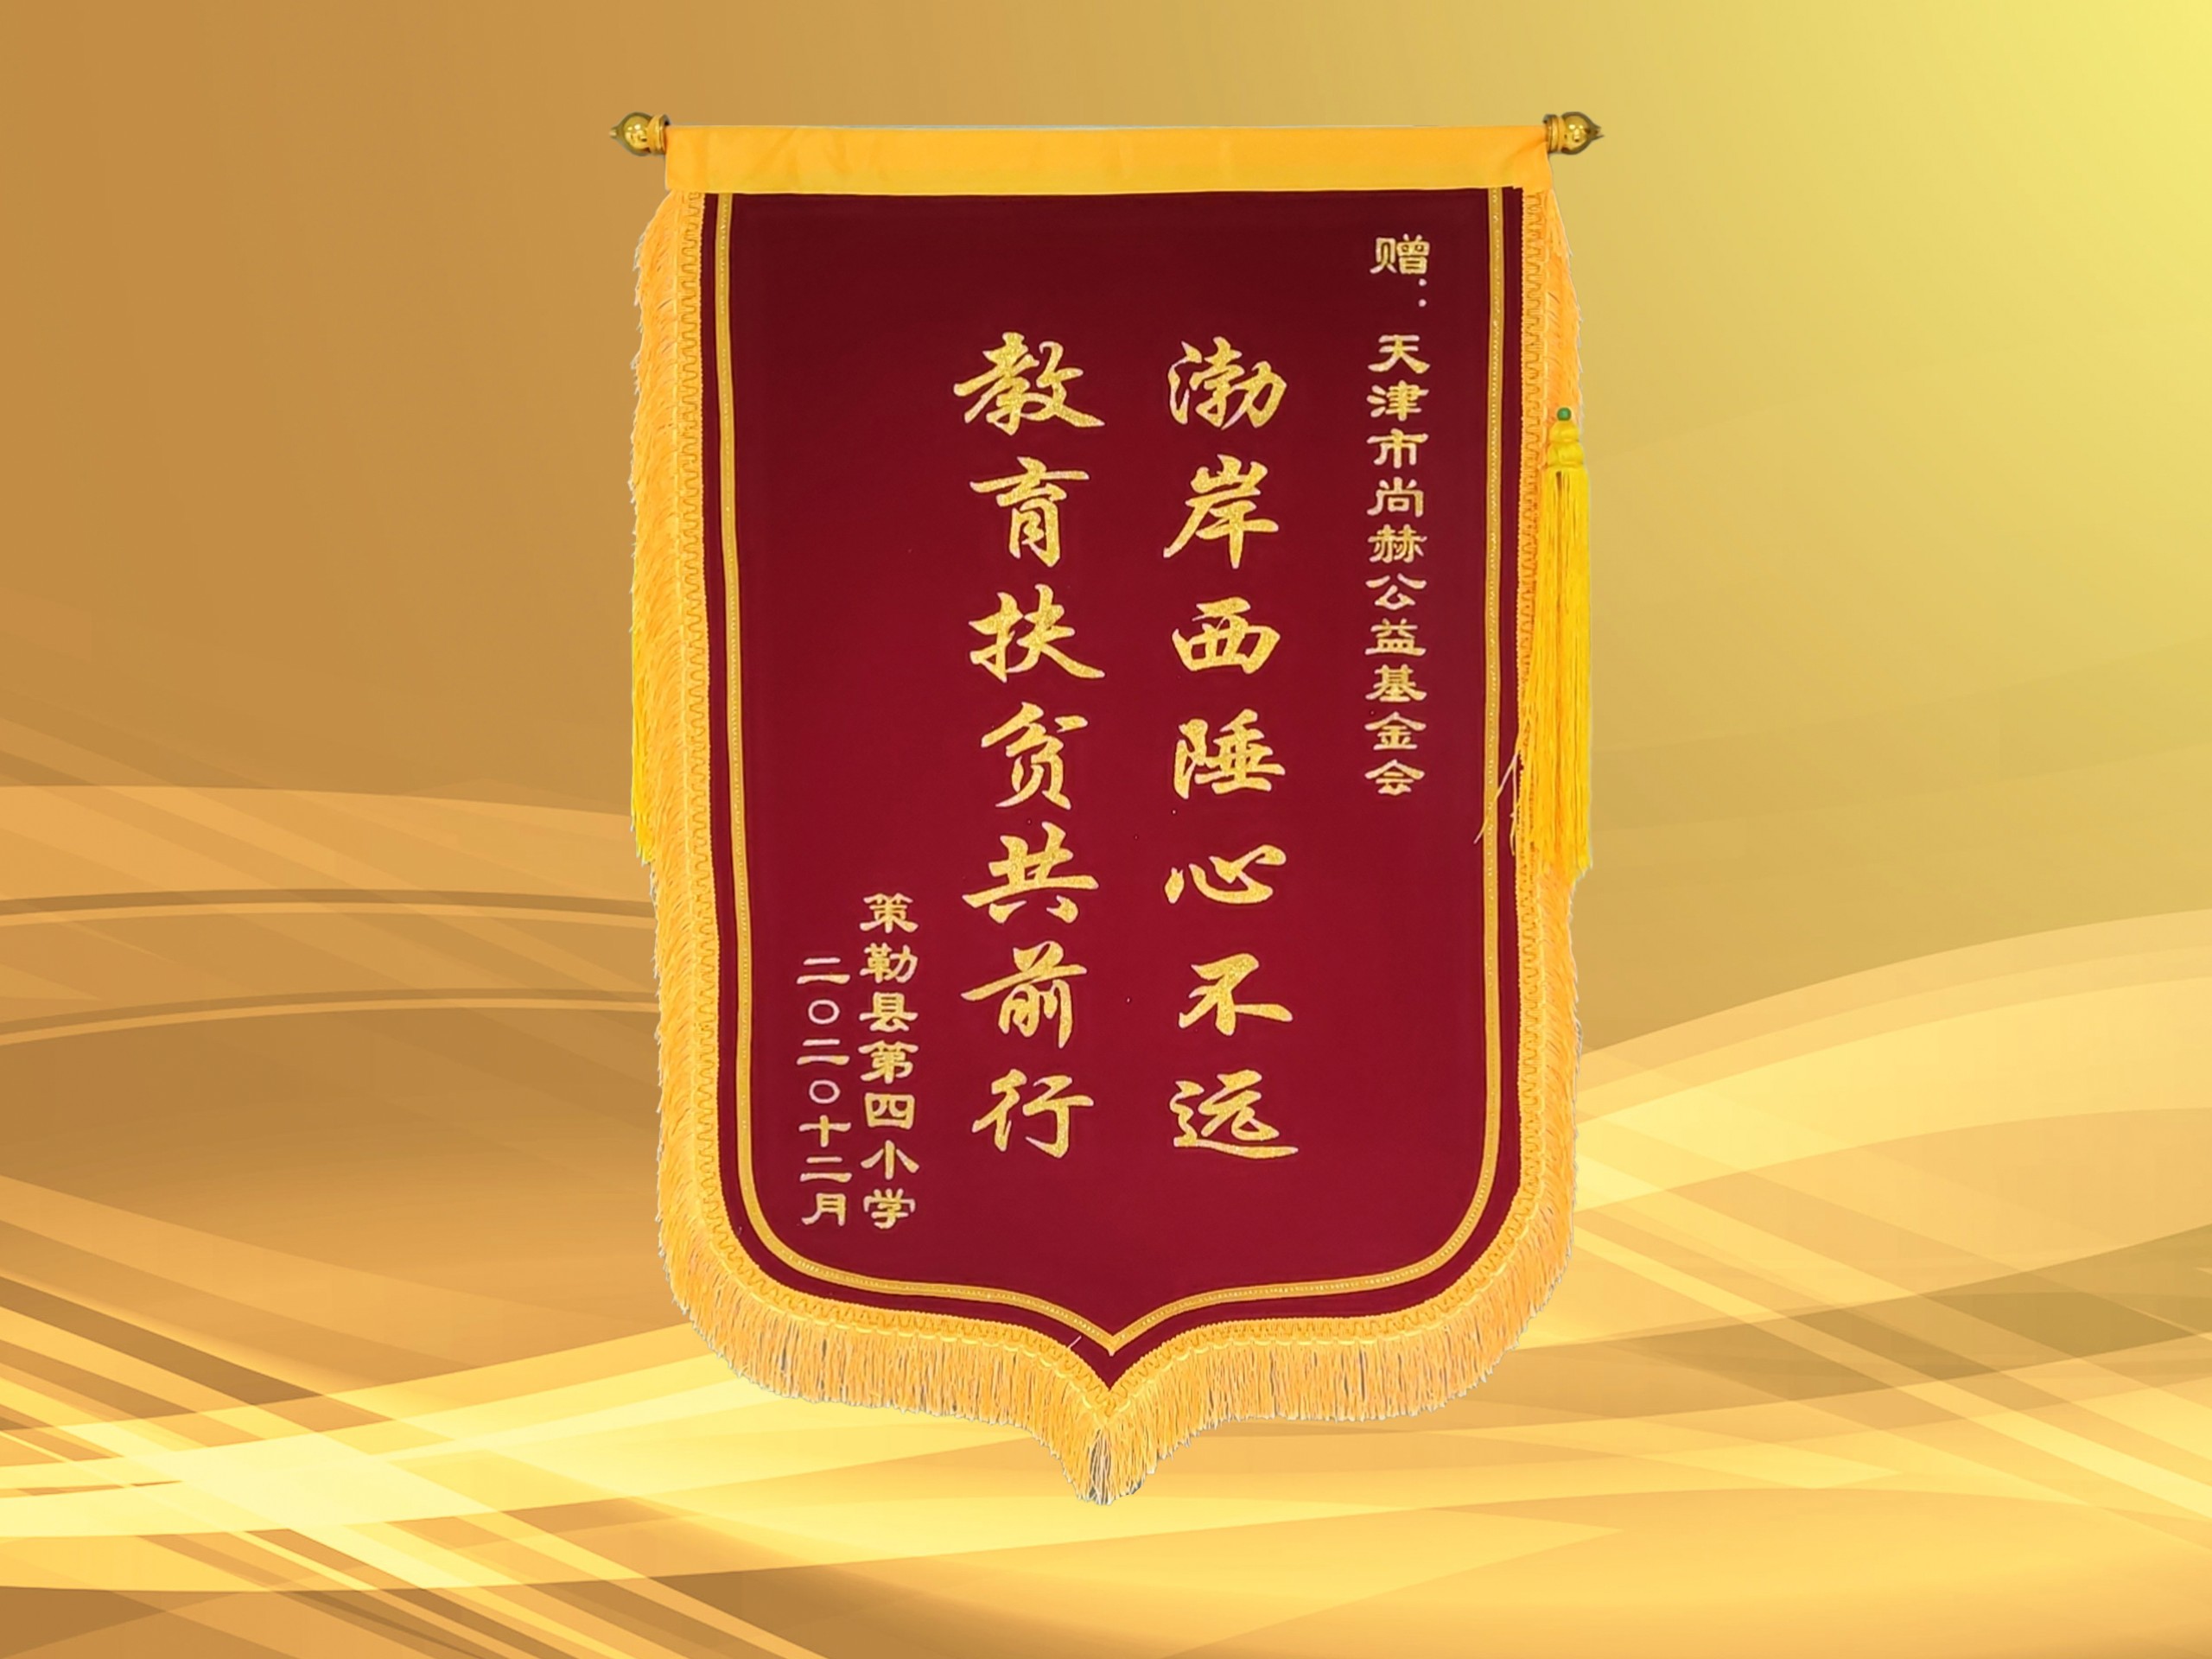 3月-立博登录（中国）有限公司官网公益基金会收到新疆策勒县第四小学赠予的锦旗